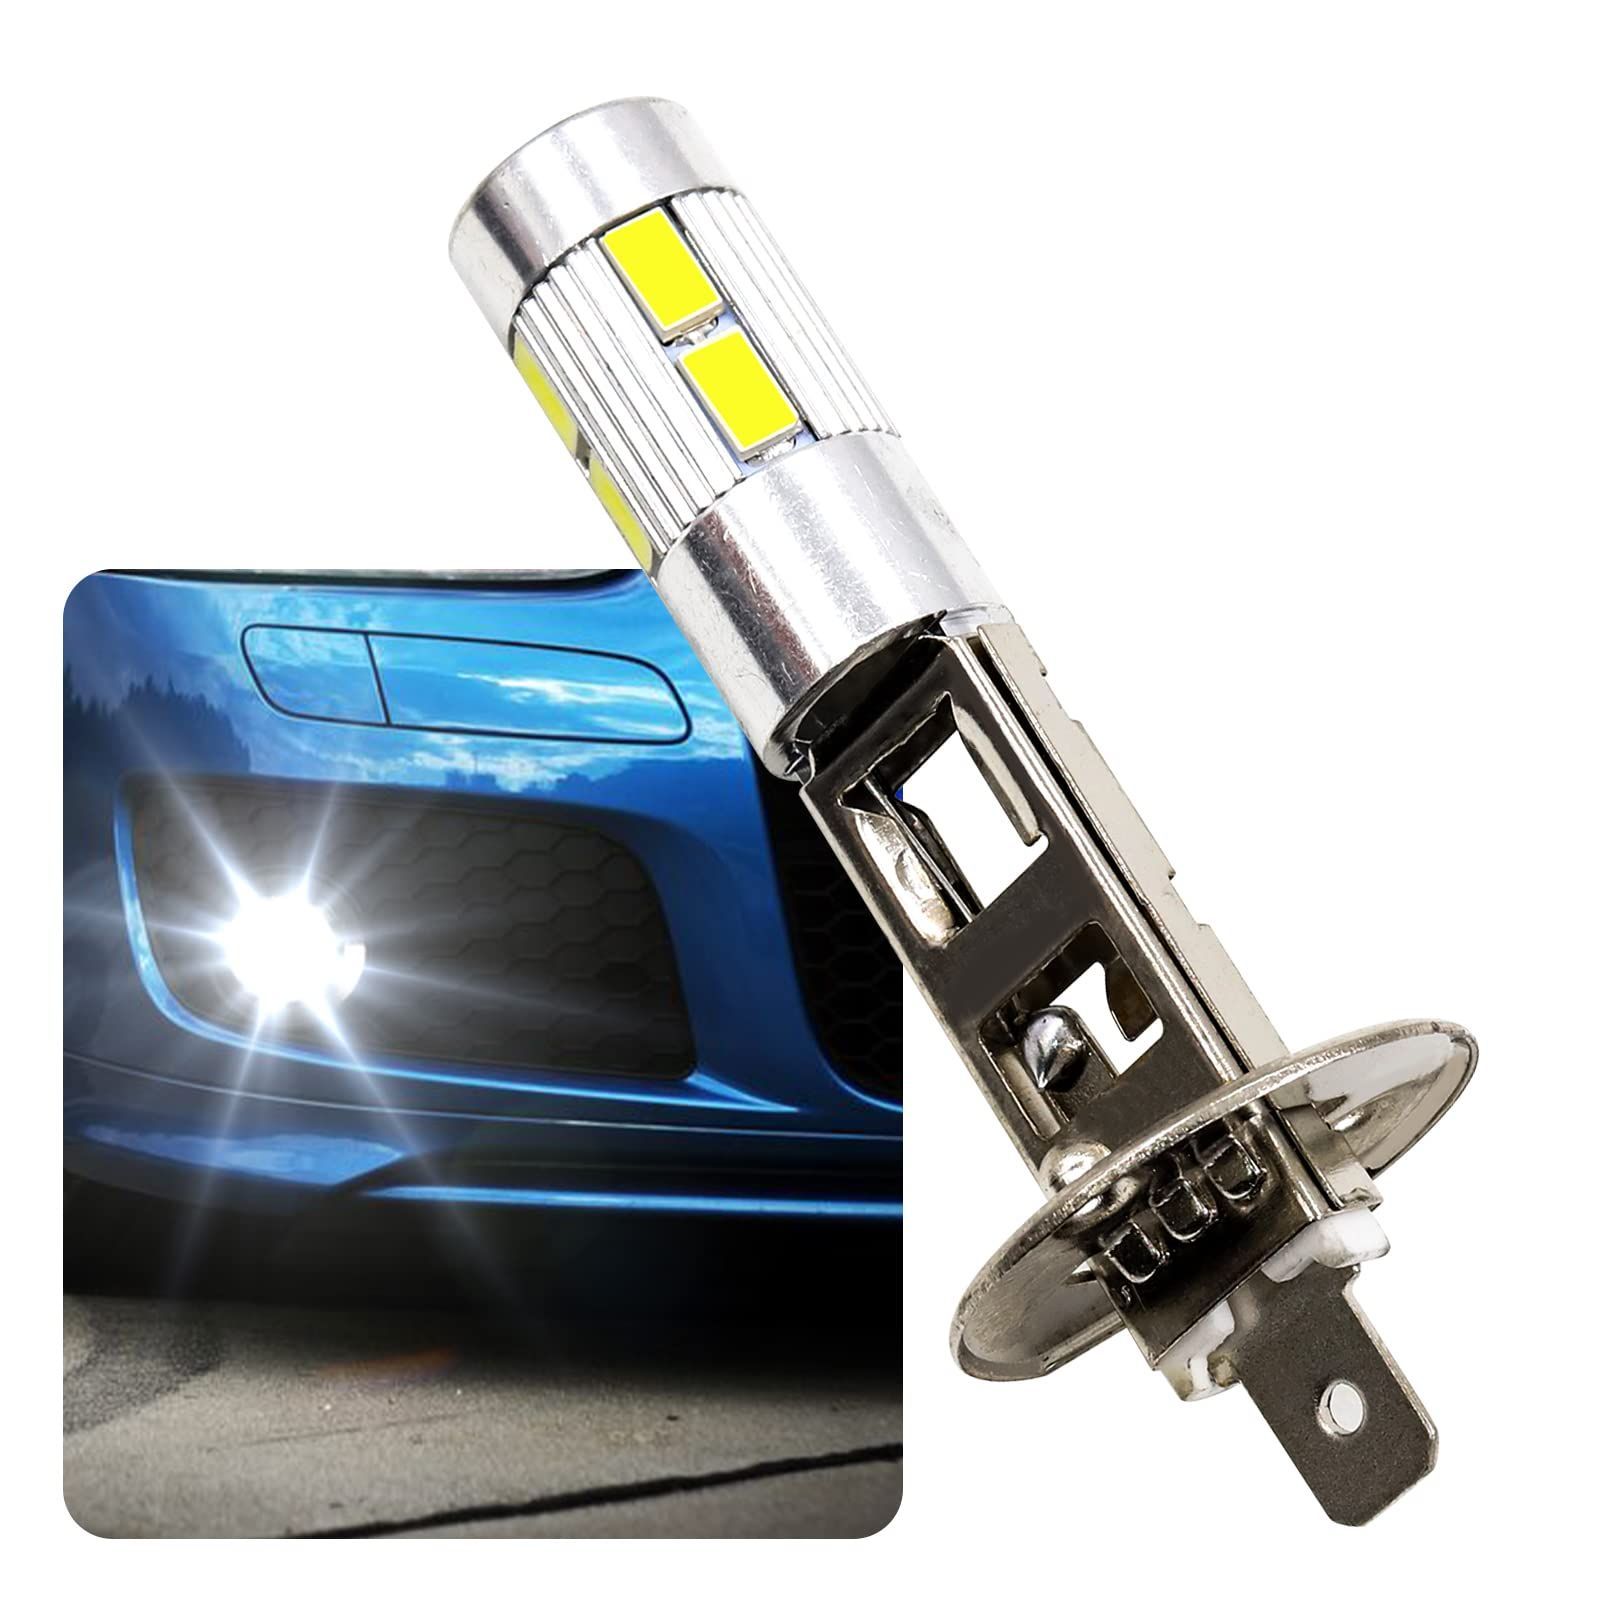 新品 H1 H1 車用 ファンレス LEDヘッドライト 高輝度耐久 ノイズレス LEDバルブ 360度発光 高速放熱 12V コンパクト LED  6000Kホワイト配色 LEDランプ フォグランプ LEDライト H1 Aoling 2個セット